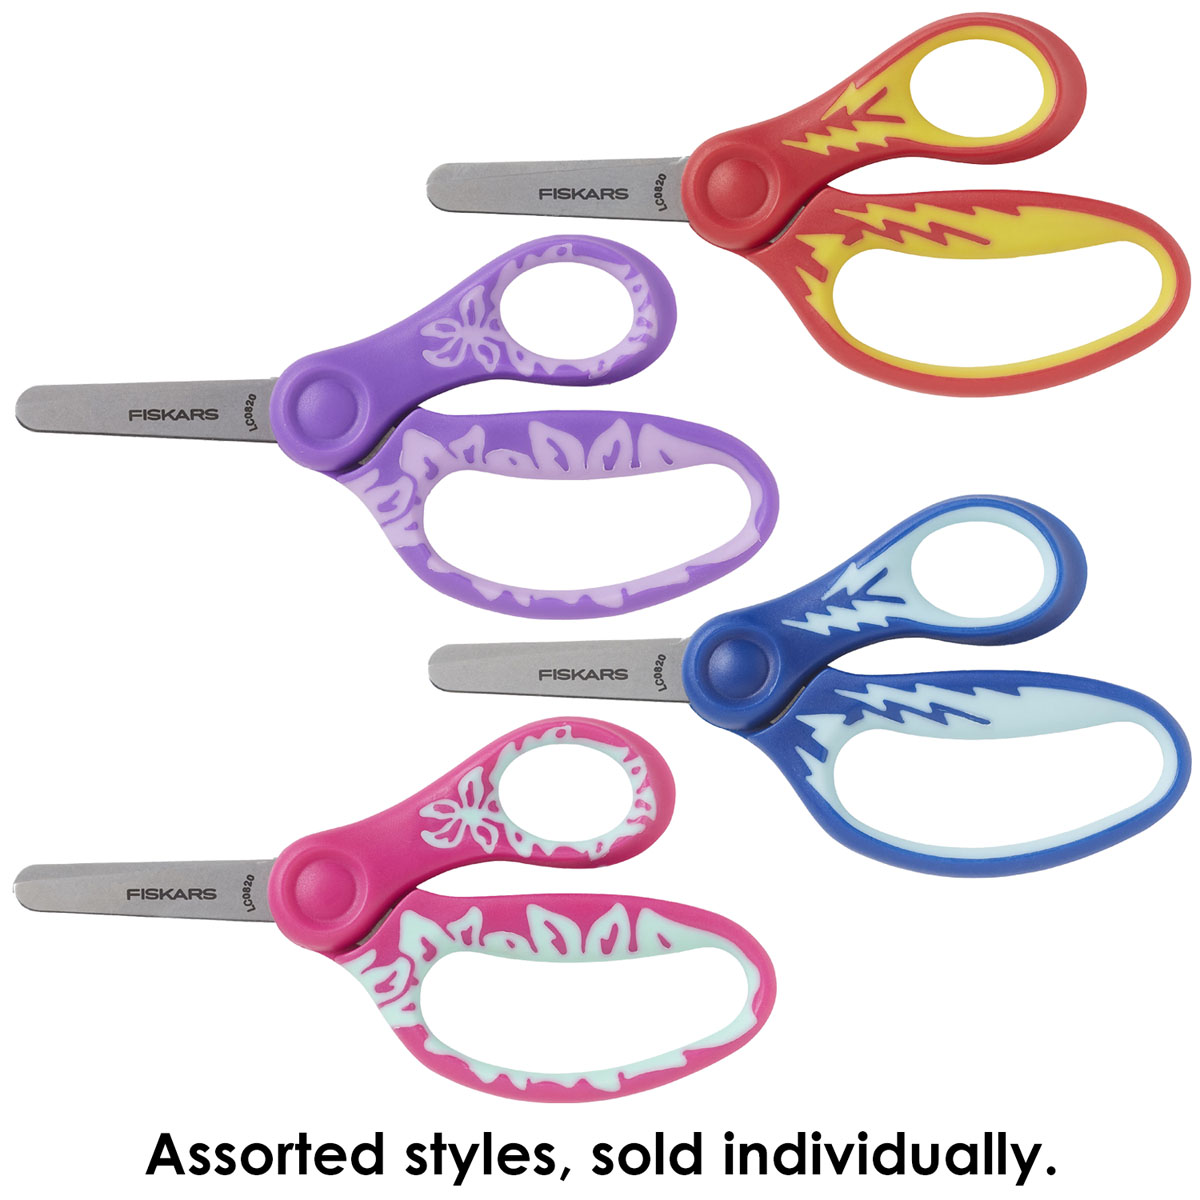 Essentials School Scissors 5-Blunt